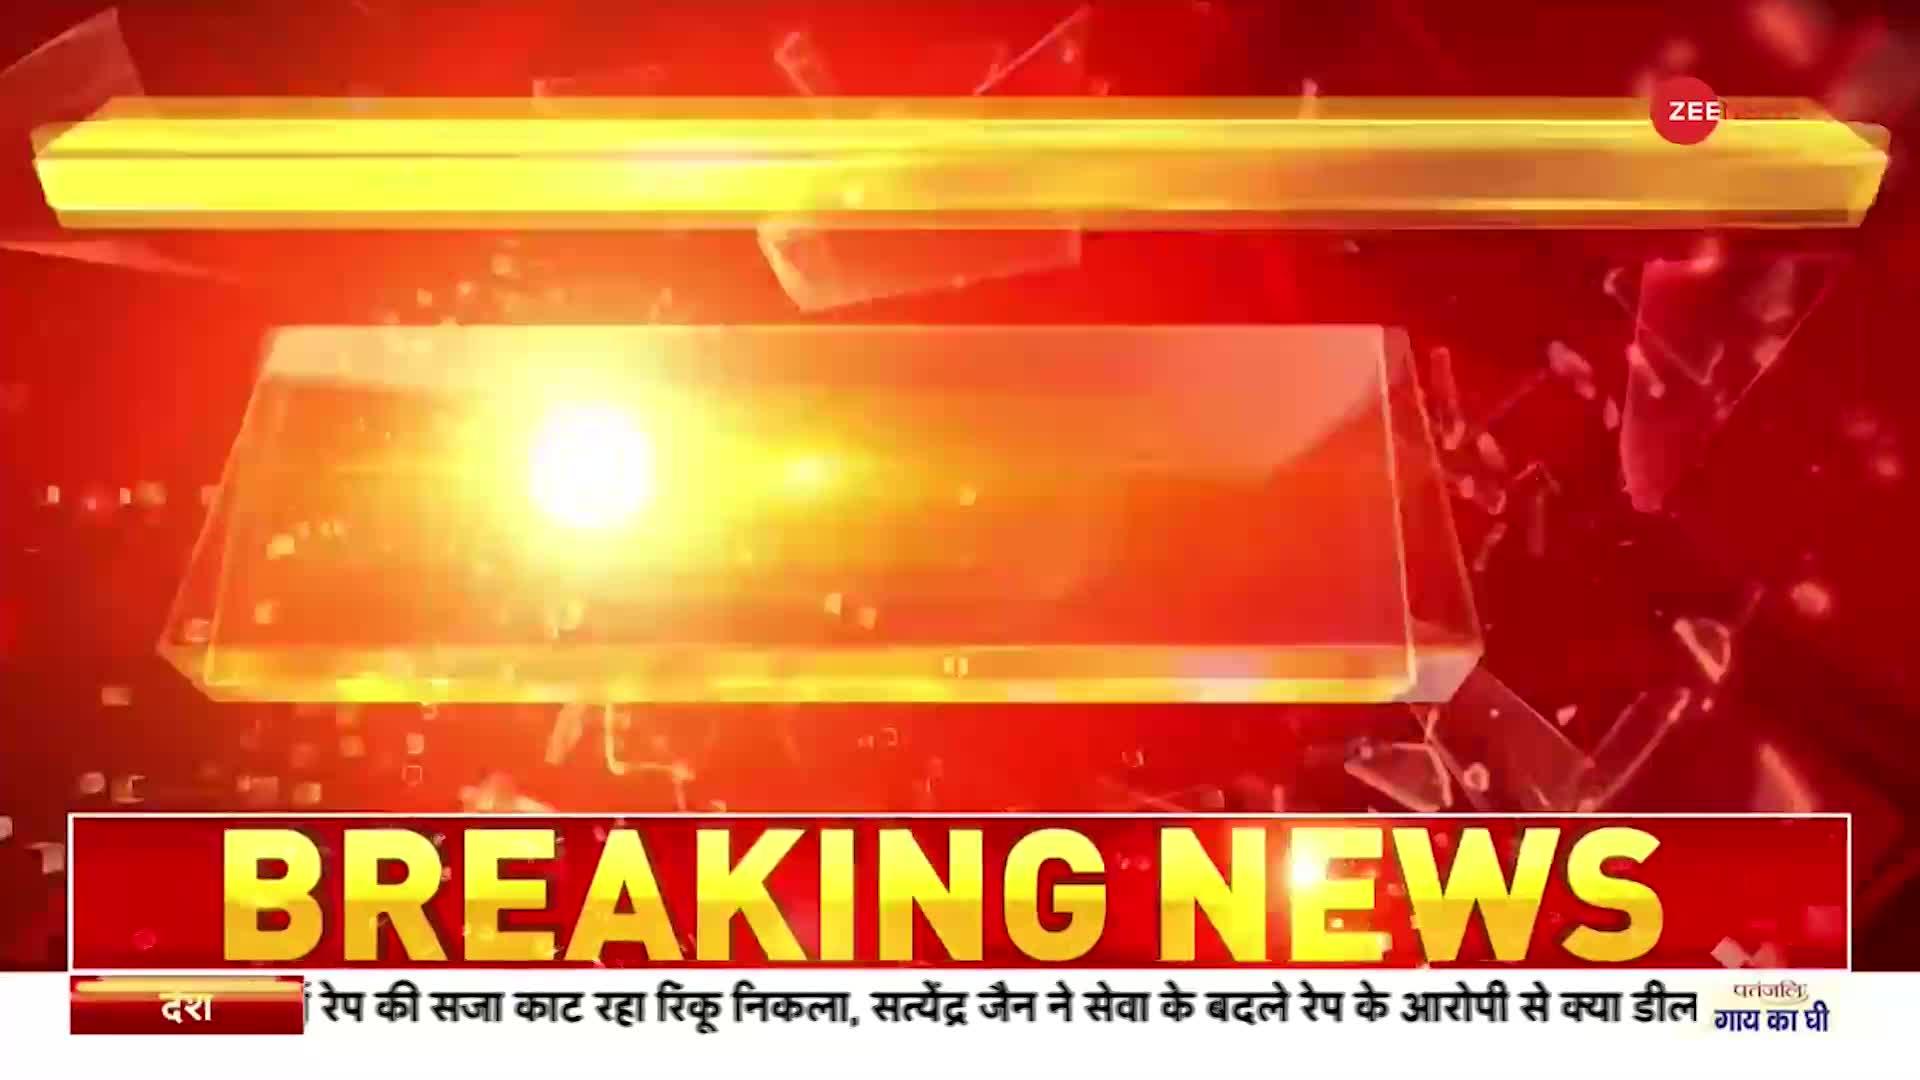 Chhattisgarh News : छत्तीसगढ़ के गरियाबंद में पुलिस पर हमला, प्रदर्शन के दौरान तोड़ी गाड़ियां